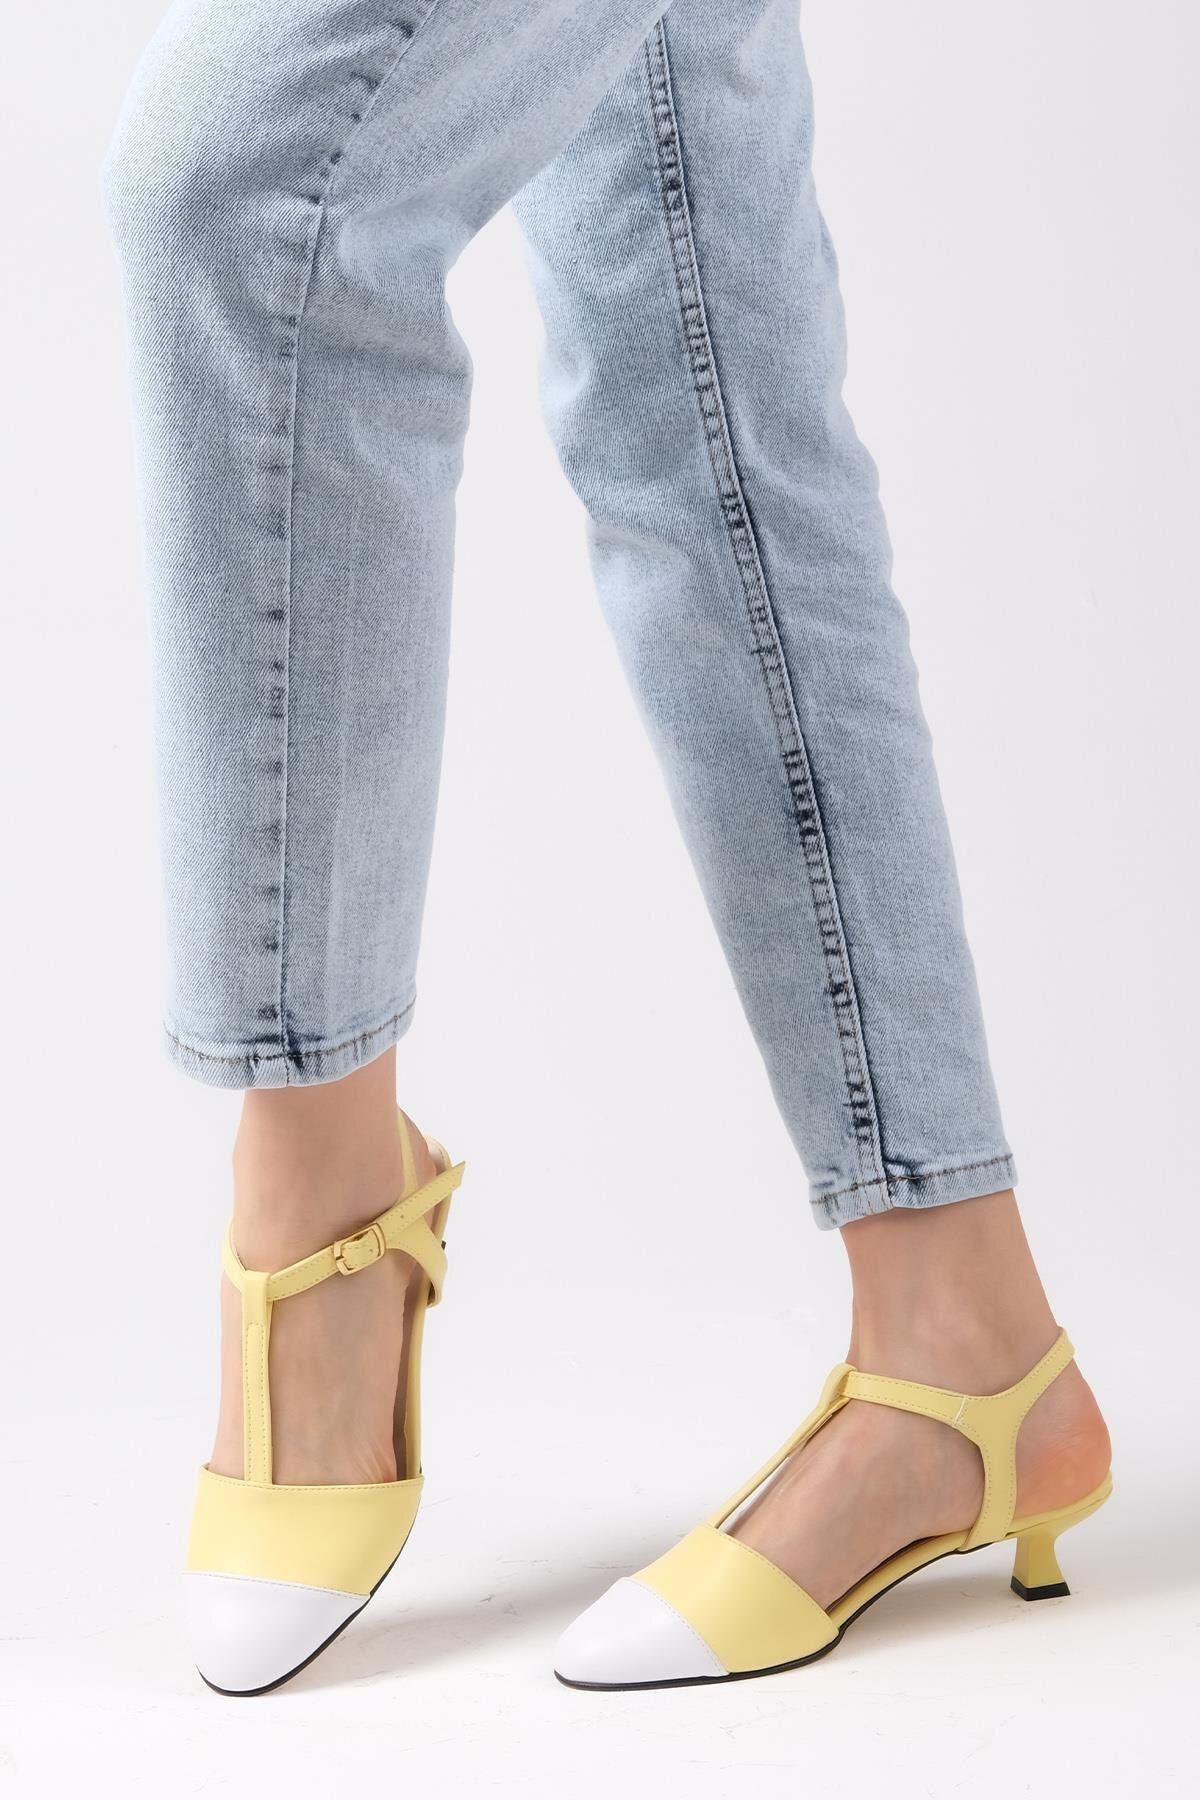 Mio Gusto Emilia Sarı Beyaz Renk Arkası Açık Kadın Kısa Topuklu Ayakkabı